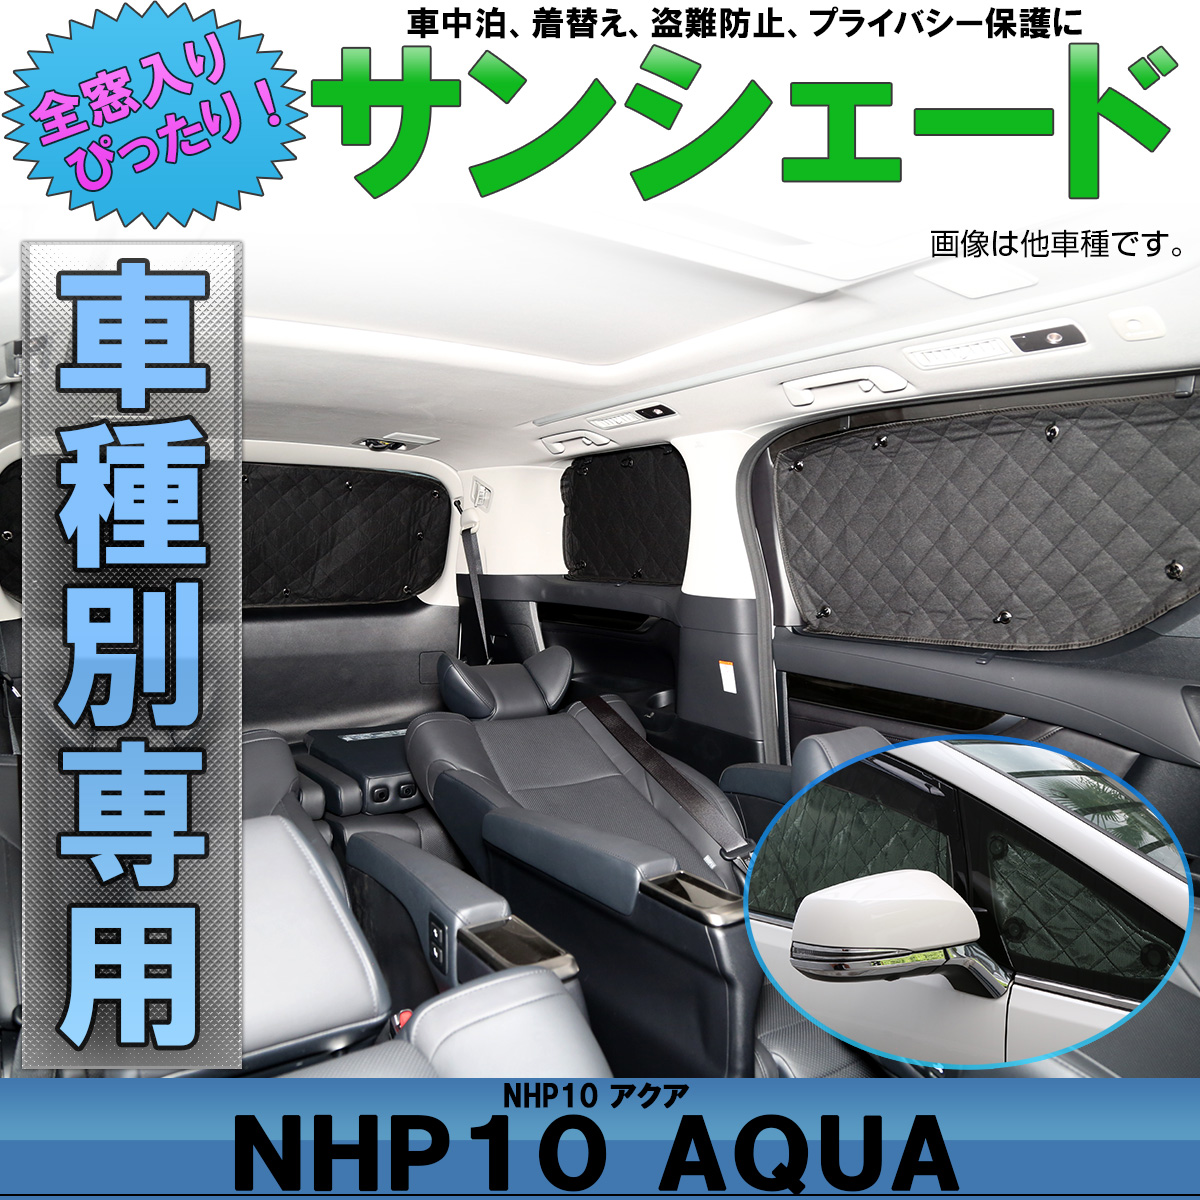 トヨタ Nhp10系 アクア 専用 サンシェード クロスオーバーも対応 全窓セット 5層 ブラックメッシュ 車中泊 アウトドア S 810